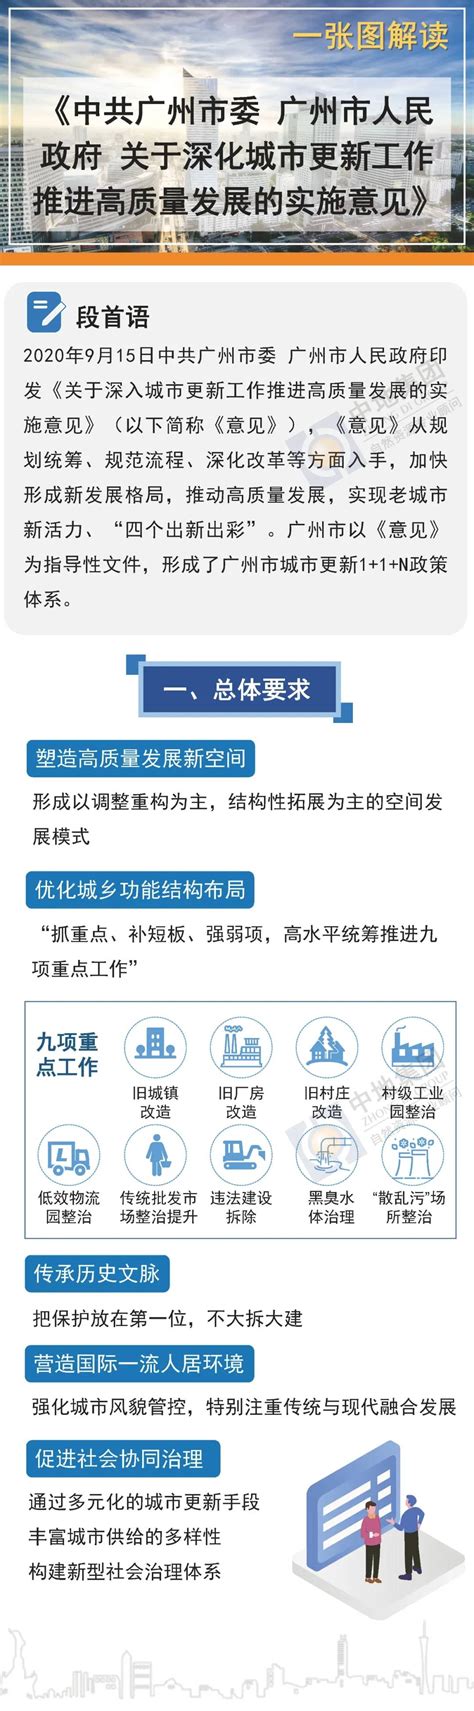 一张图解读《广州市人民政府关于深化城市更新工作推进高质量发展的实施意见》_研究